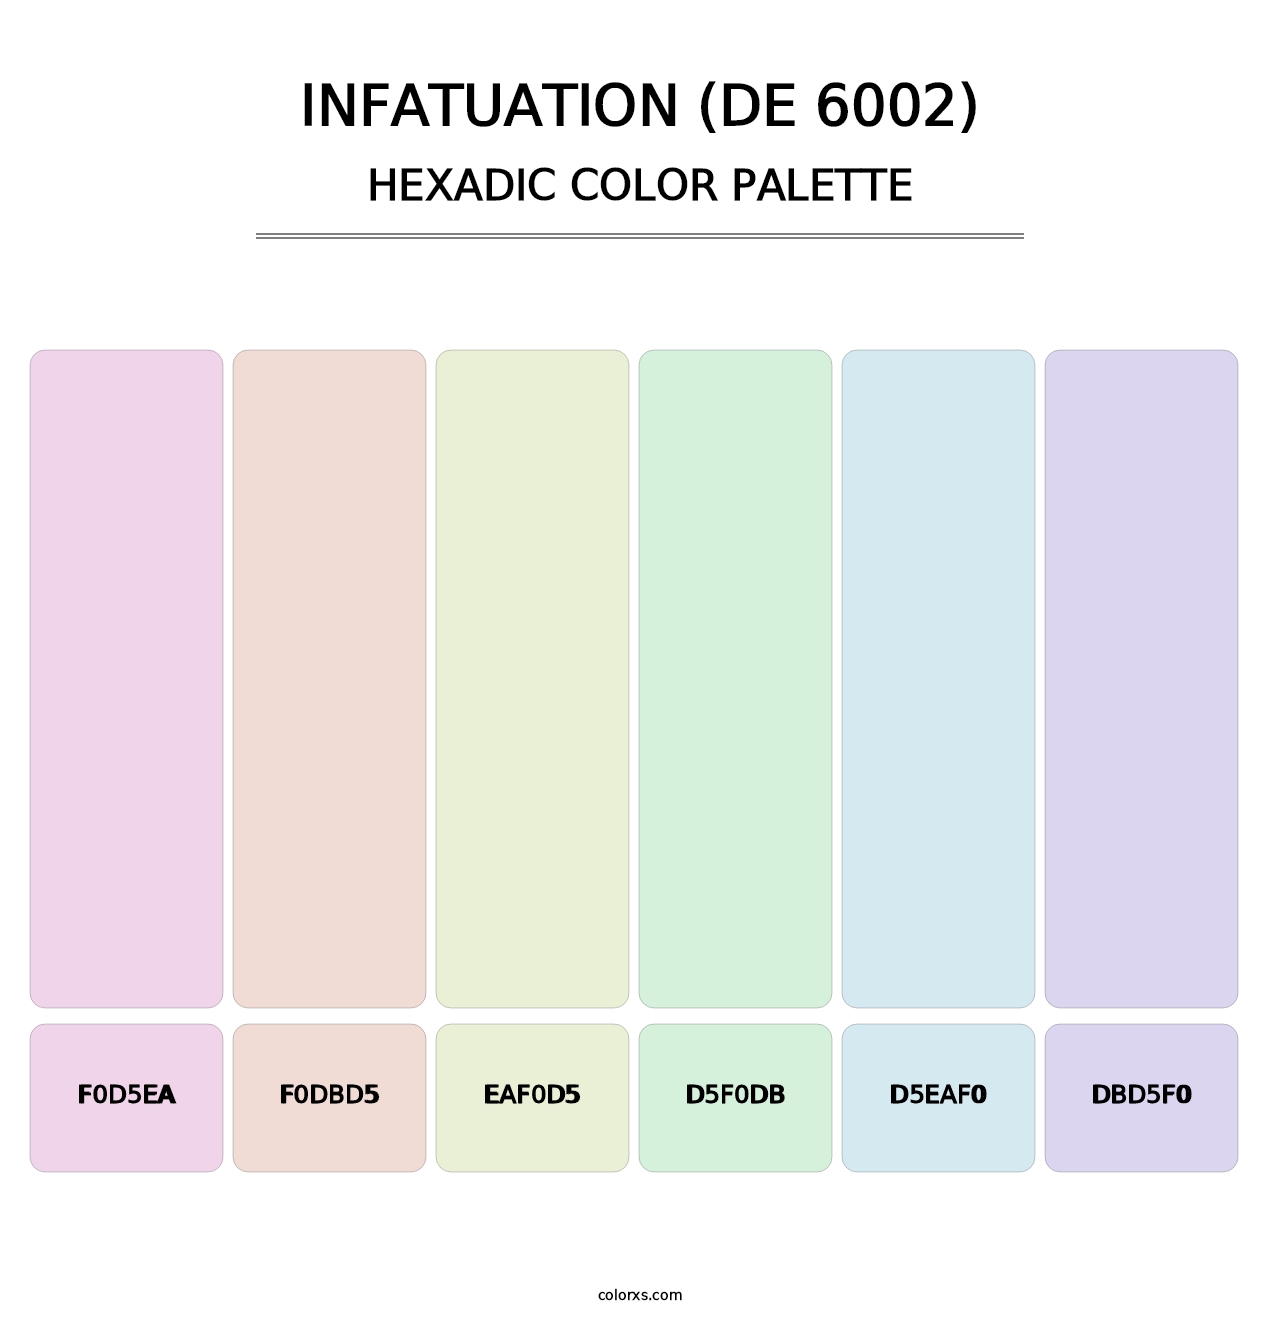 Infatuation (DE 6002) - Hexadic Color Palette